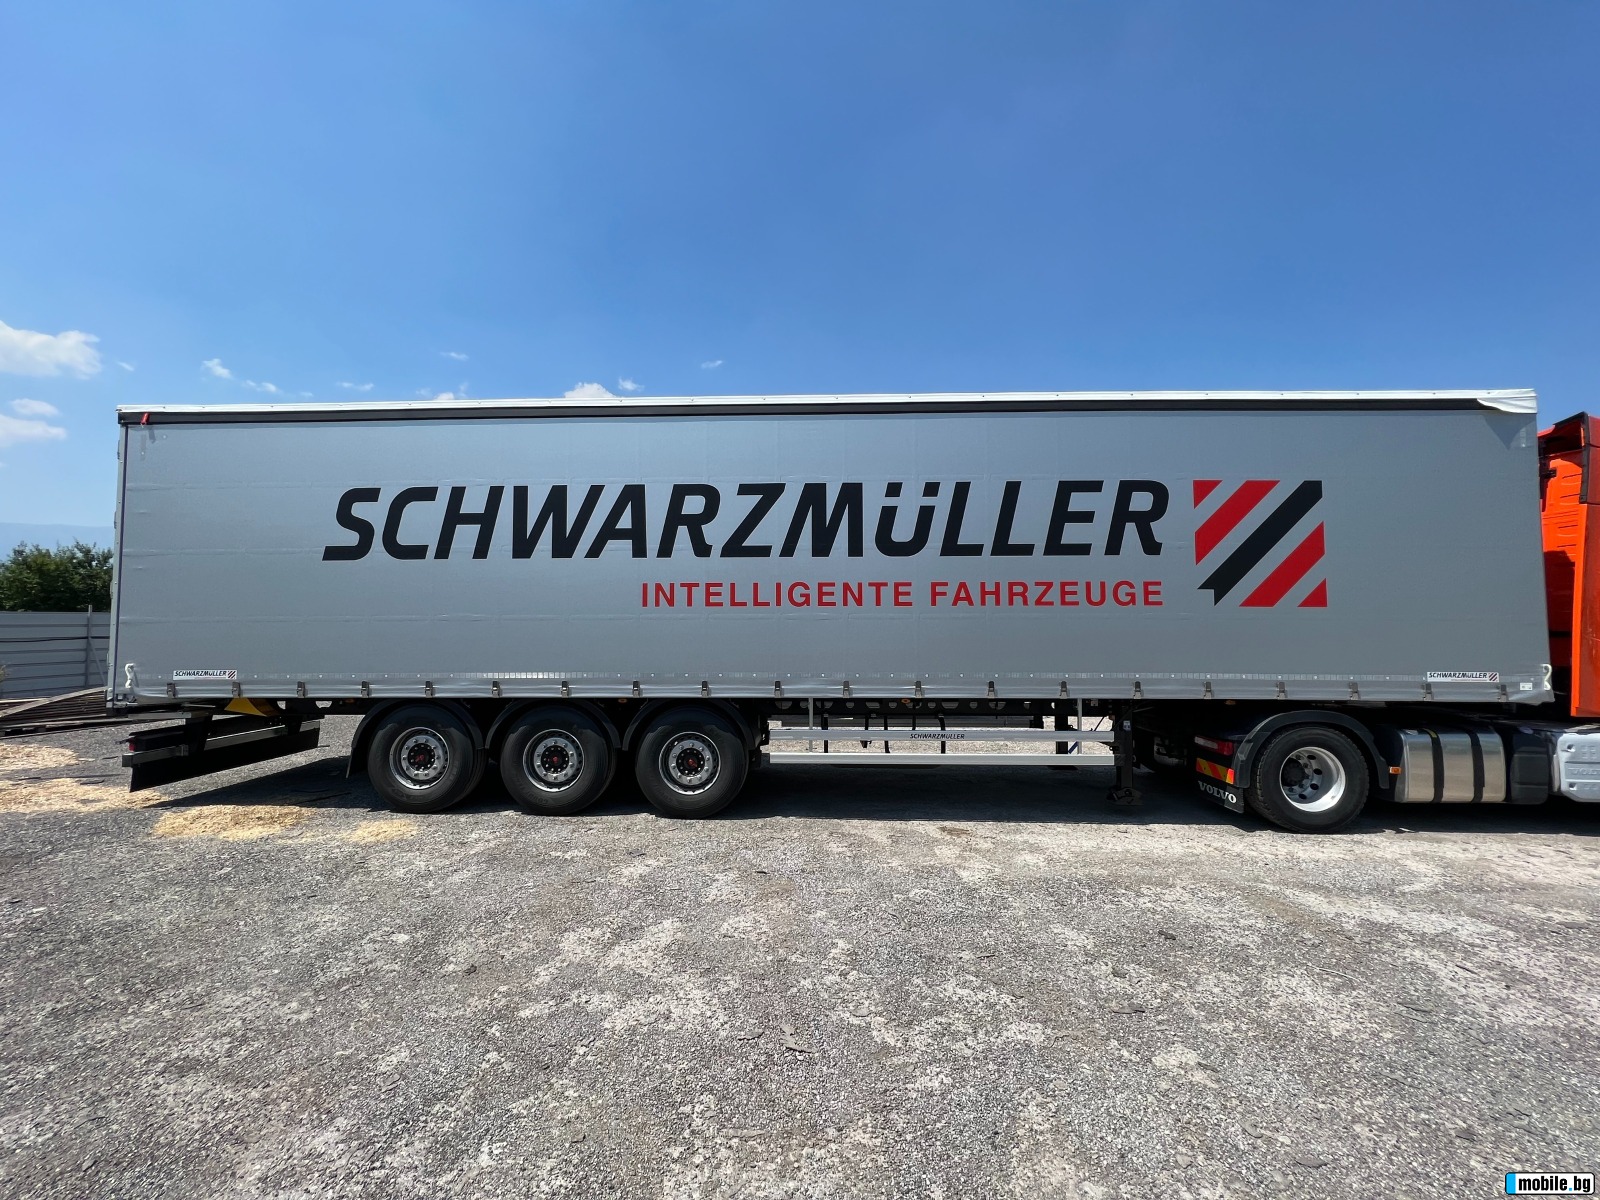  Schwarzmuller J-Serie, 5570kg, Goodyear,  | Mobile.bg   6